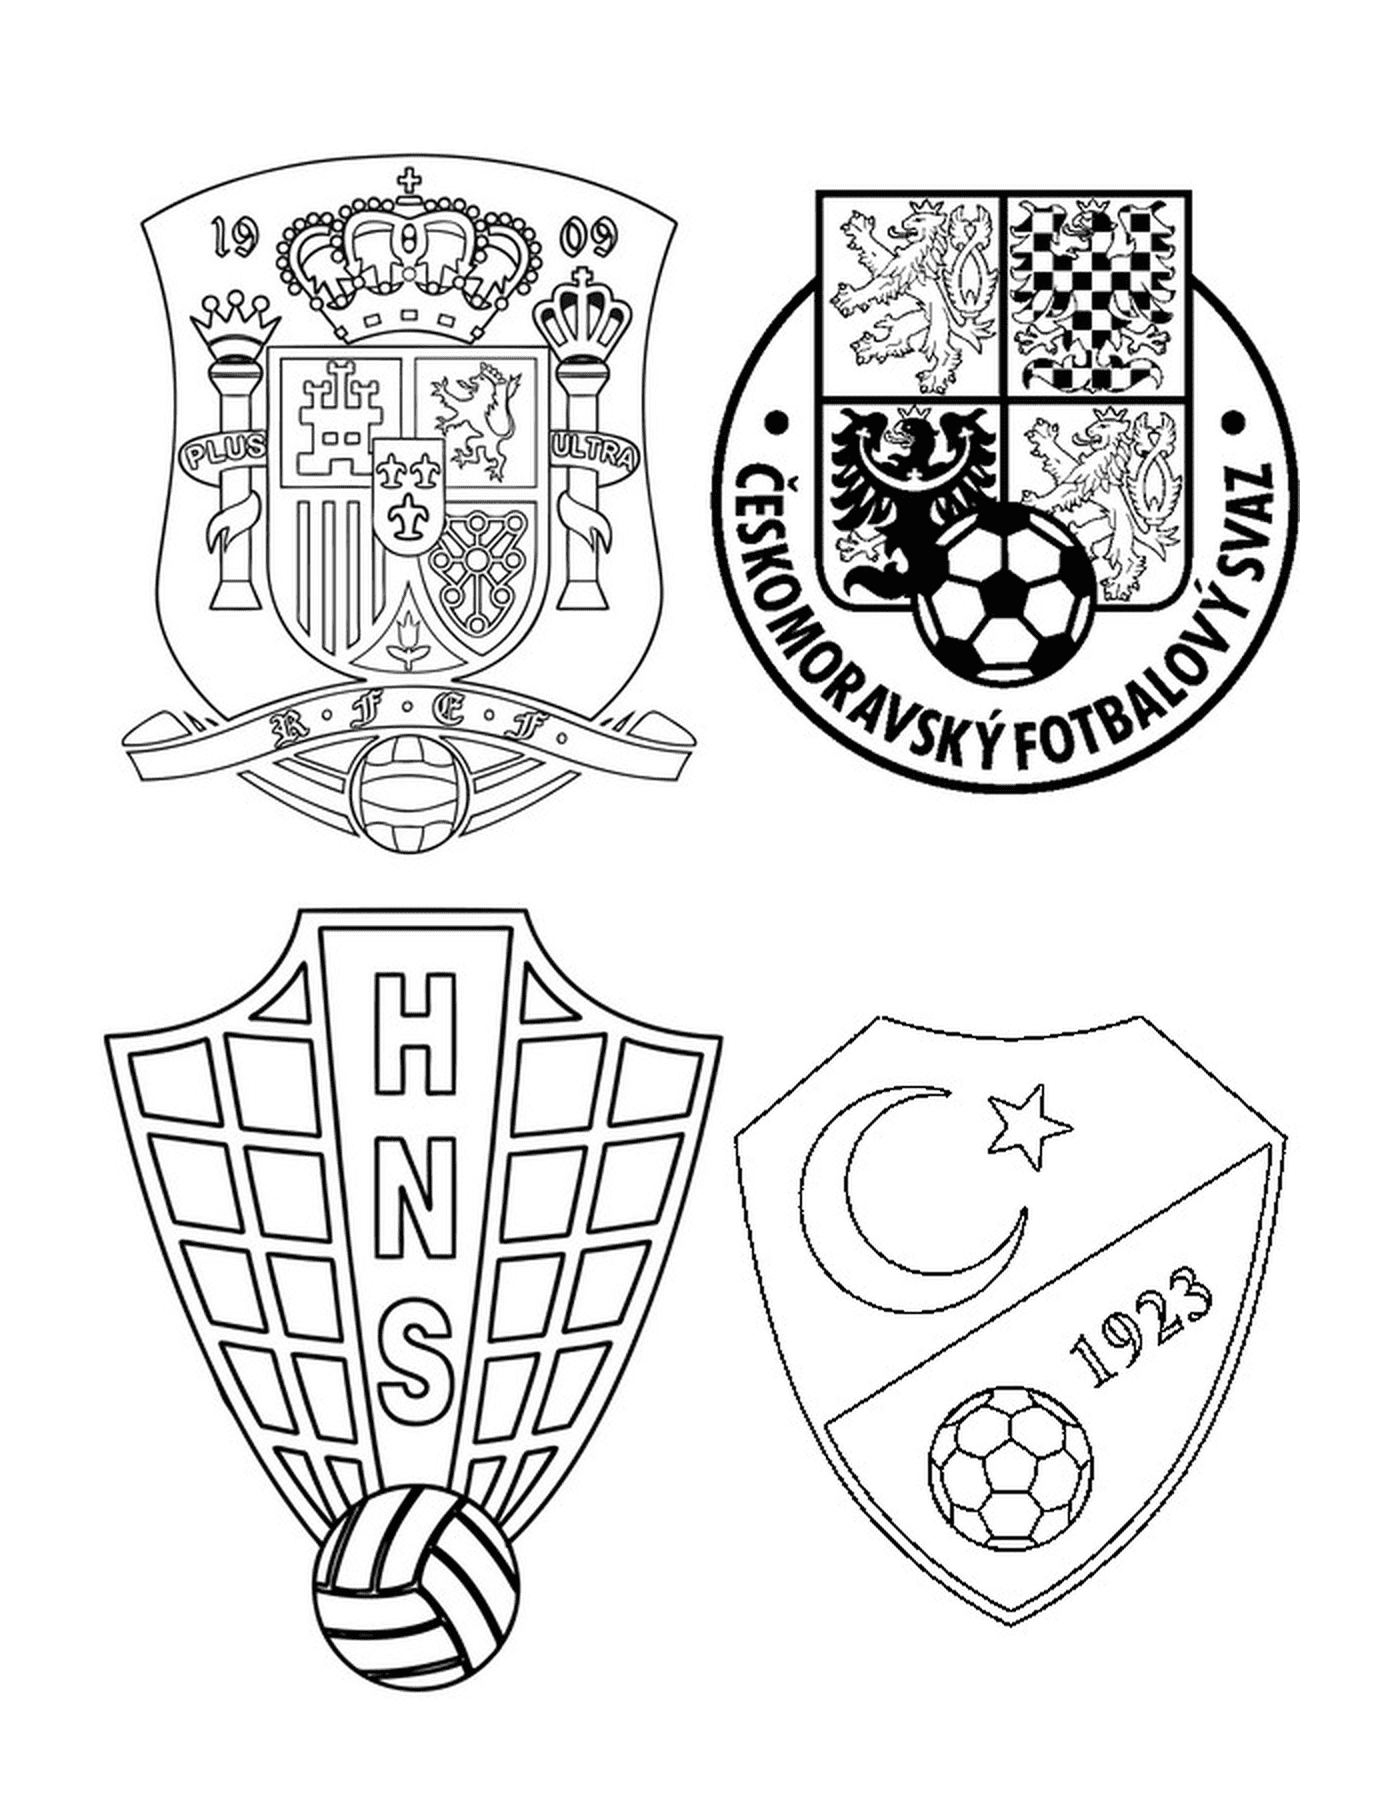  أربعة شعارات مختلفة لفريق كرة القدم 